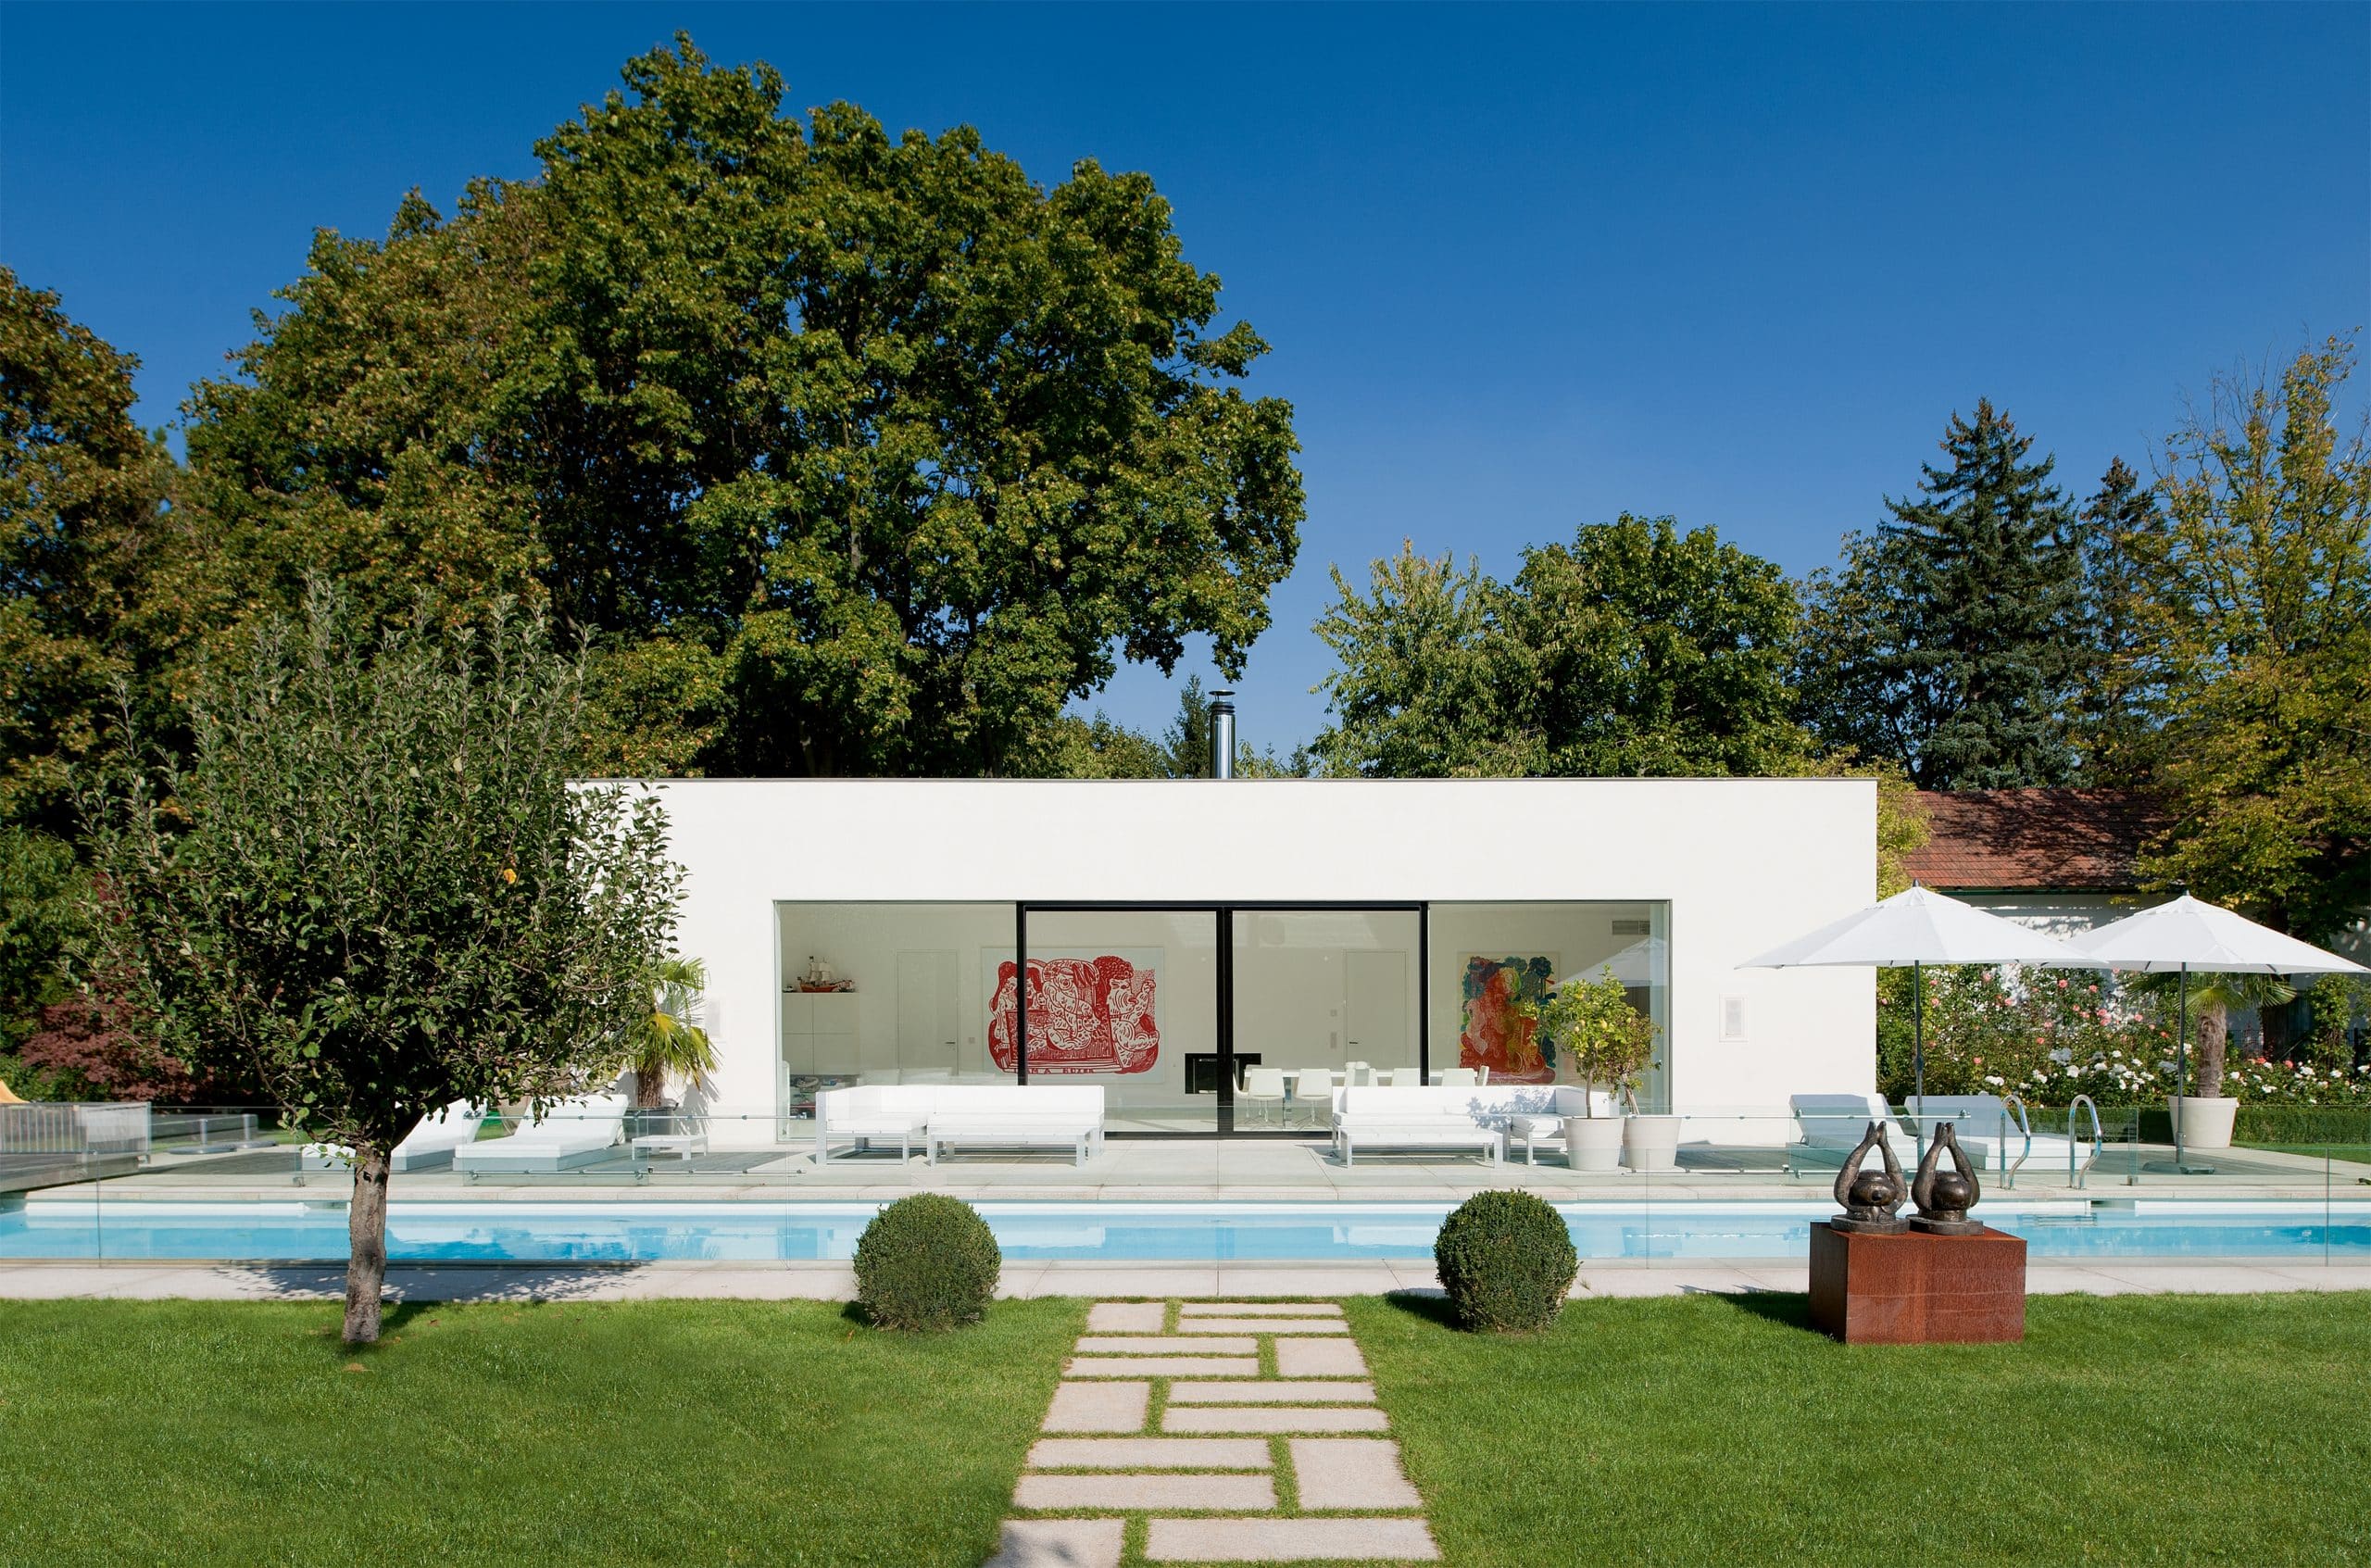 Modernes, exklusives Poolhaus mit Flachdach, breitem Ganzglas-Schiebessystem von Josko und großem Pool und Lounge-Möbel auf der Terrasse.